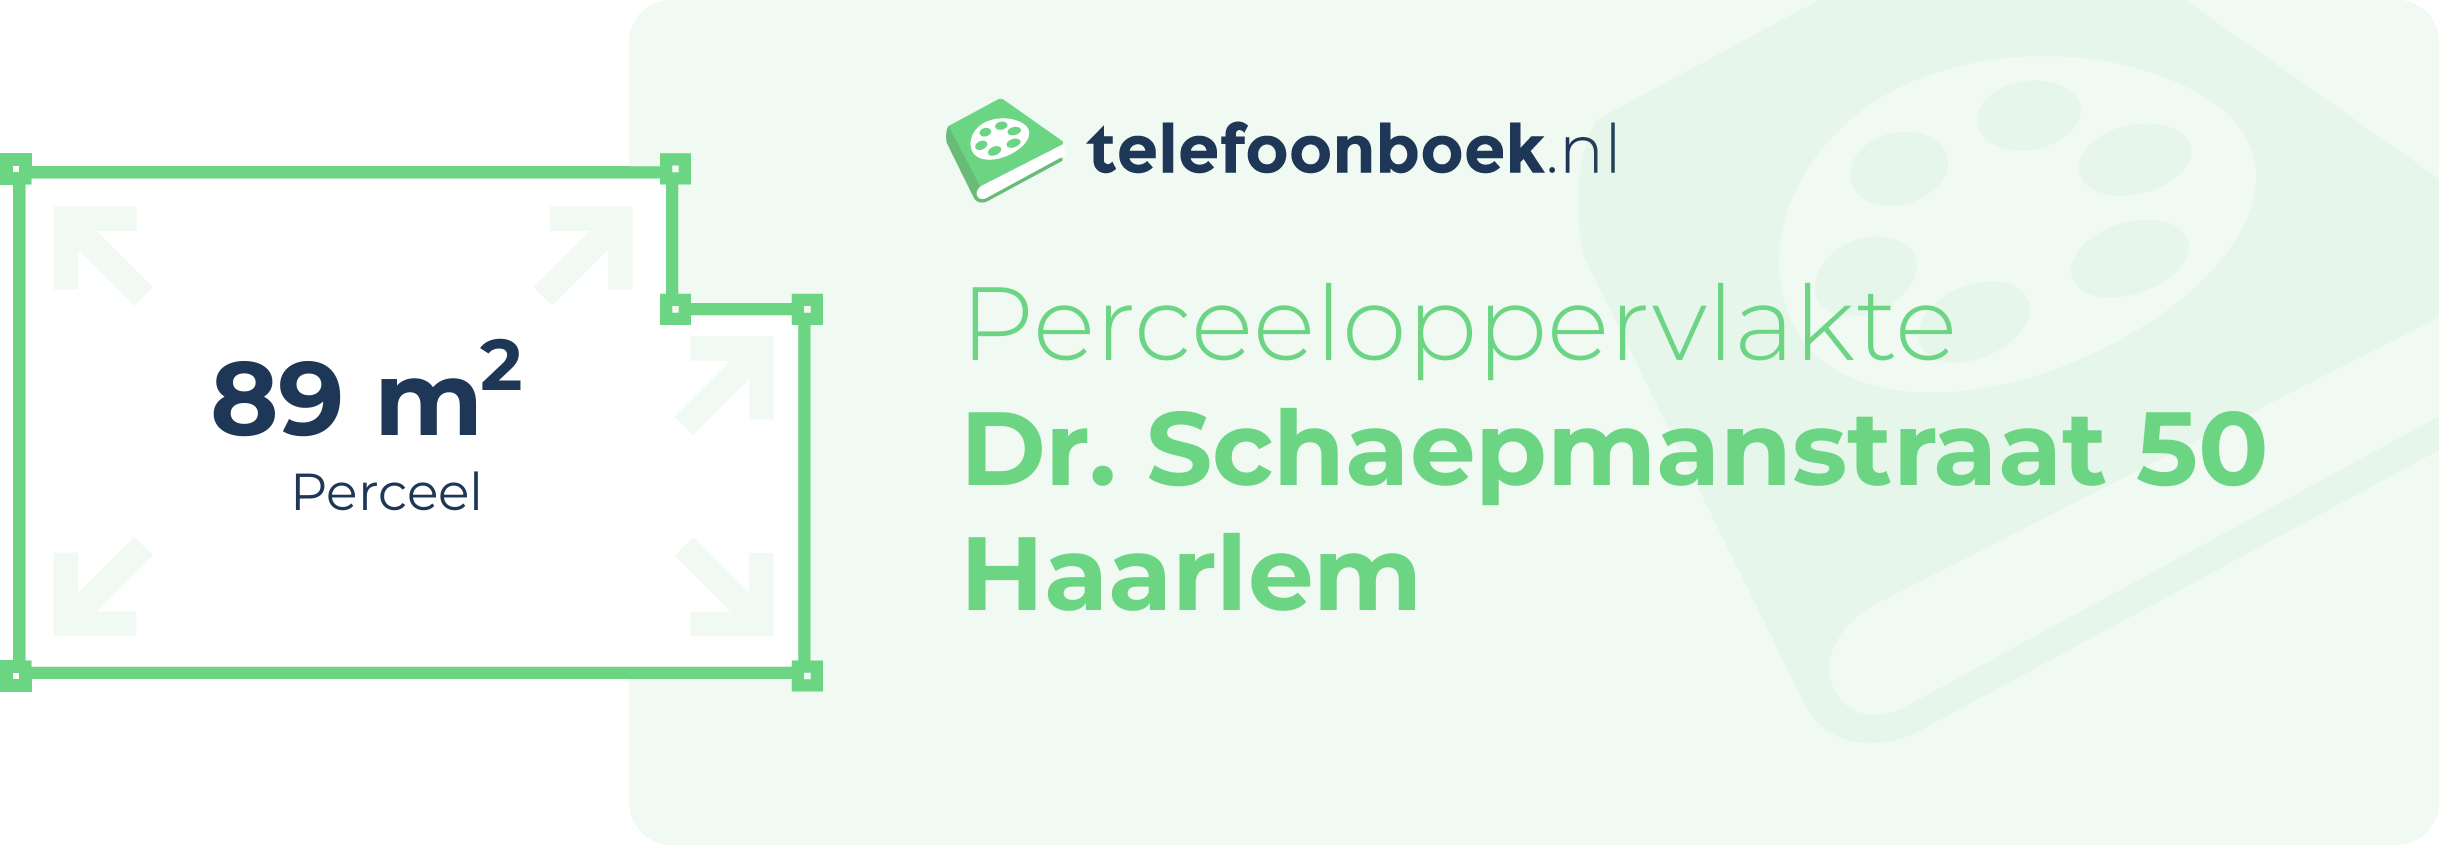 Perceeloppervlakte Dr. Schaepmanstraat 50 Haarlem